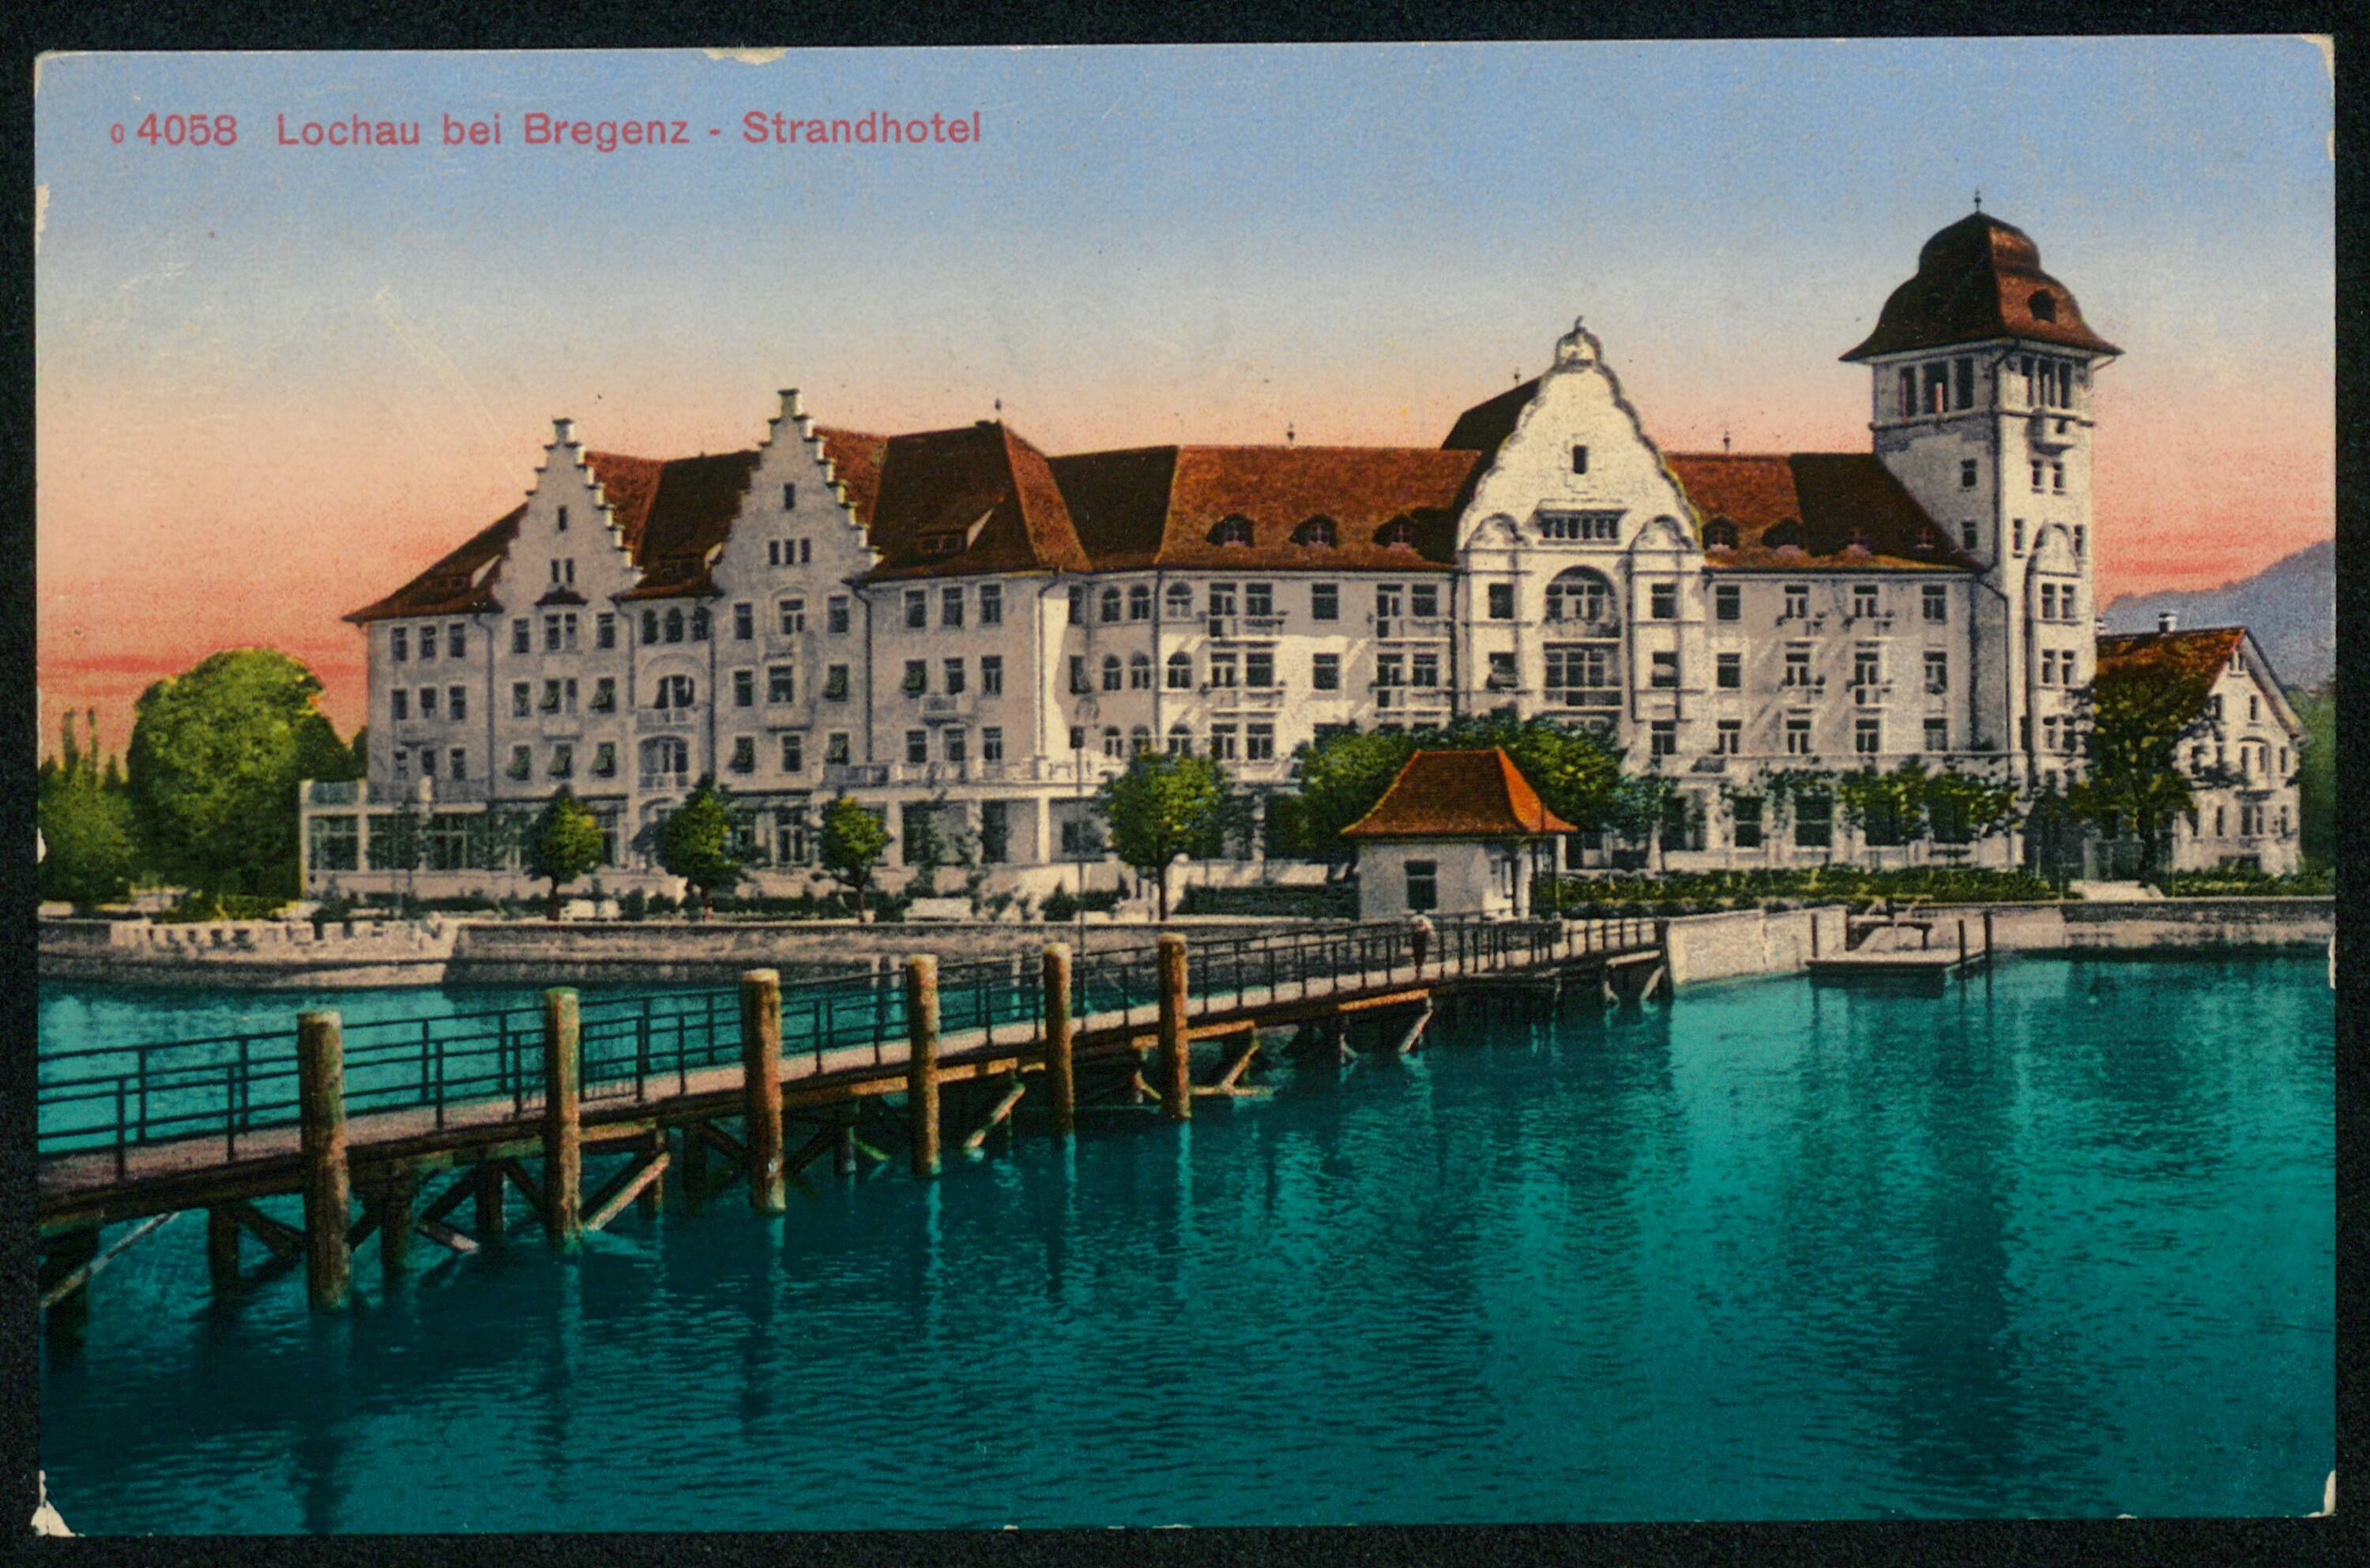 Lochau bei Bregenz - Strandhotel></div>


    <hr>
    <div class=